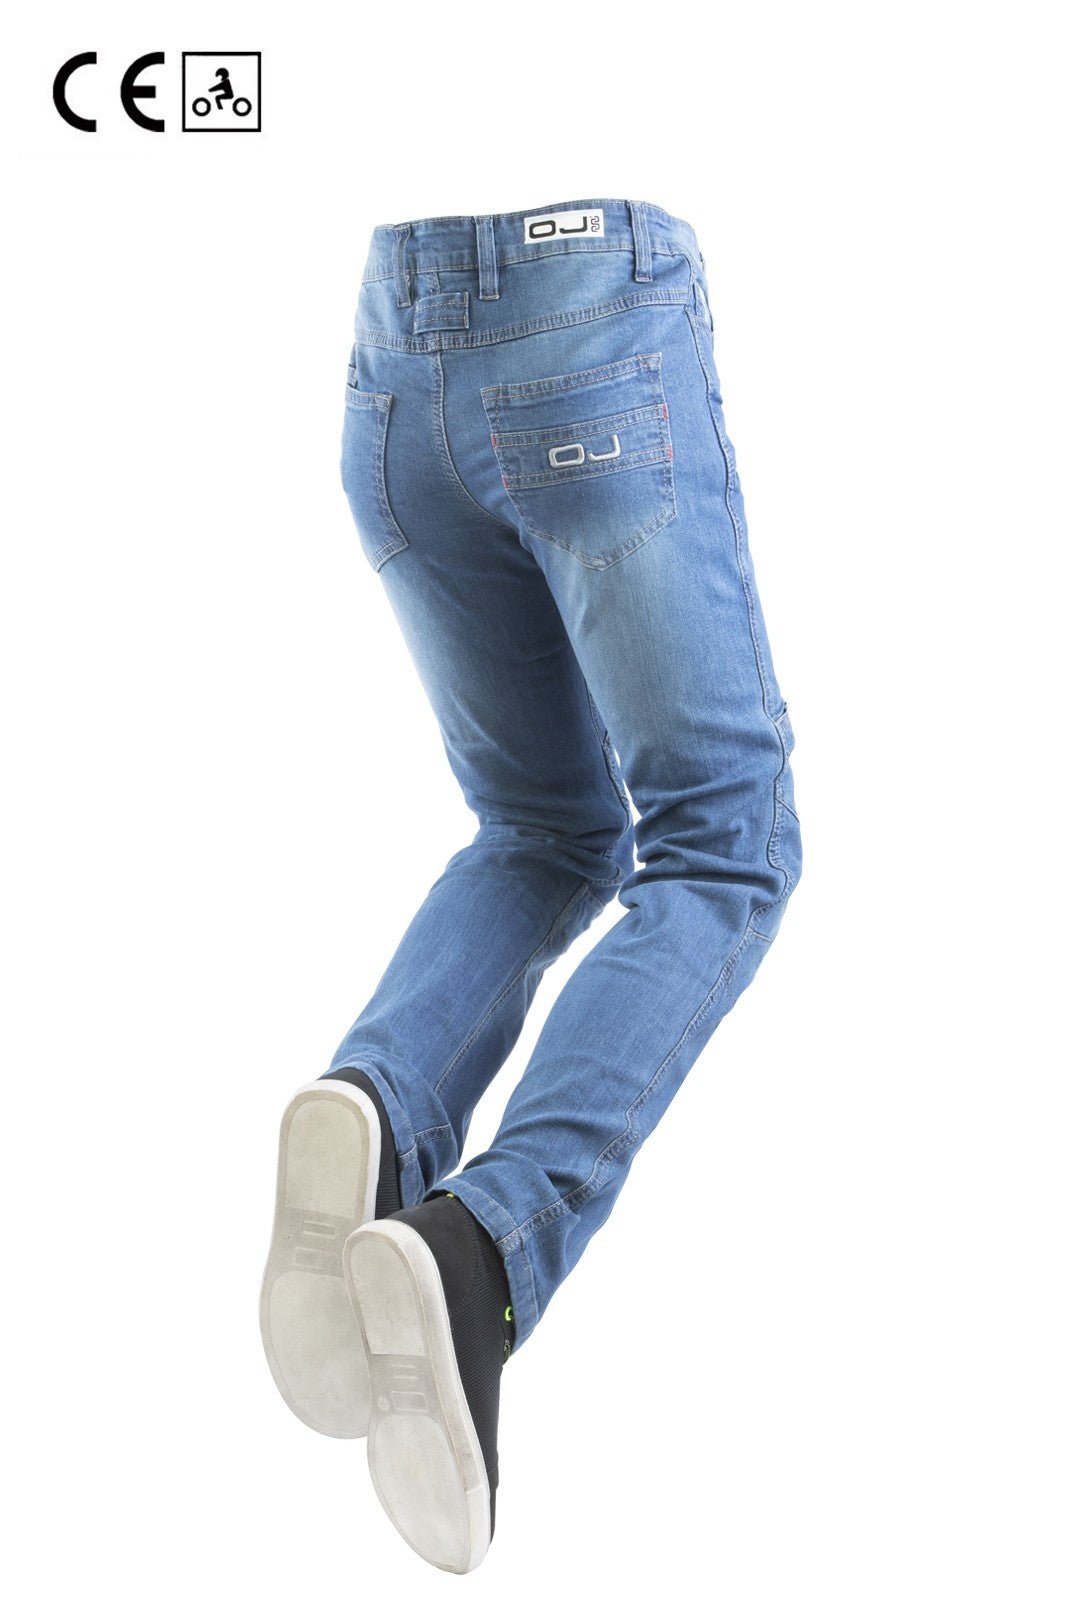 Jeans moto OJ RELOAD LADY 4 stagioni elasticizzato con protezioni - OnTheRoad.shop - OJ